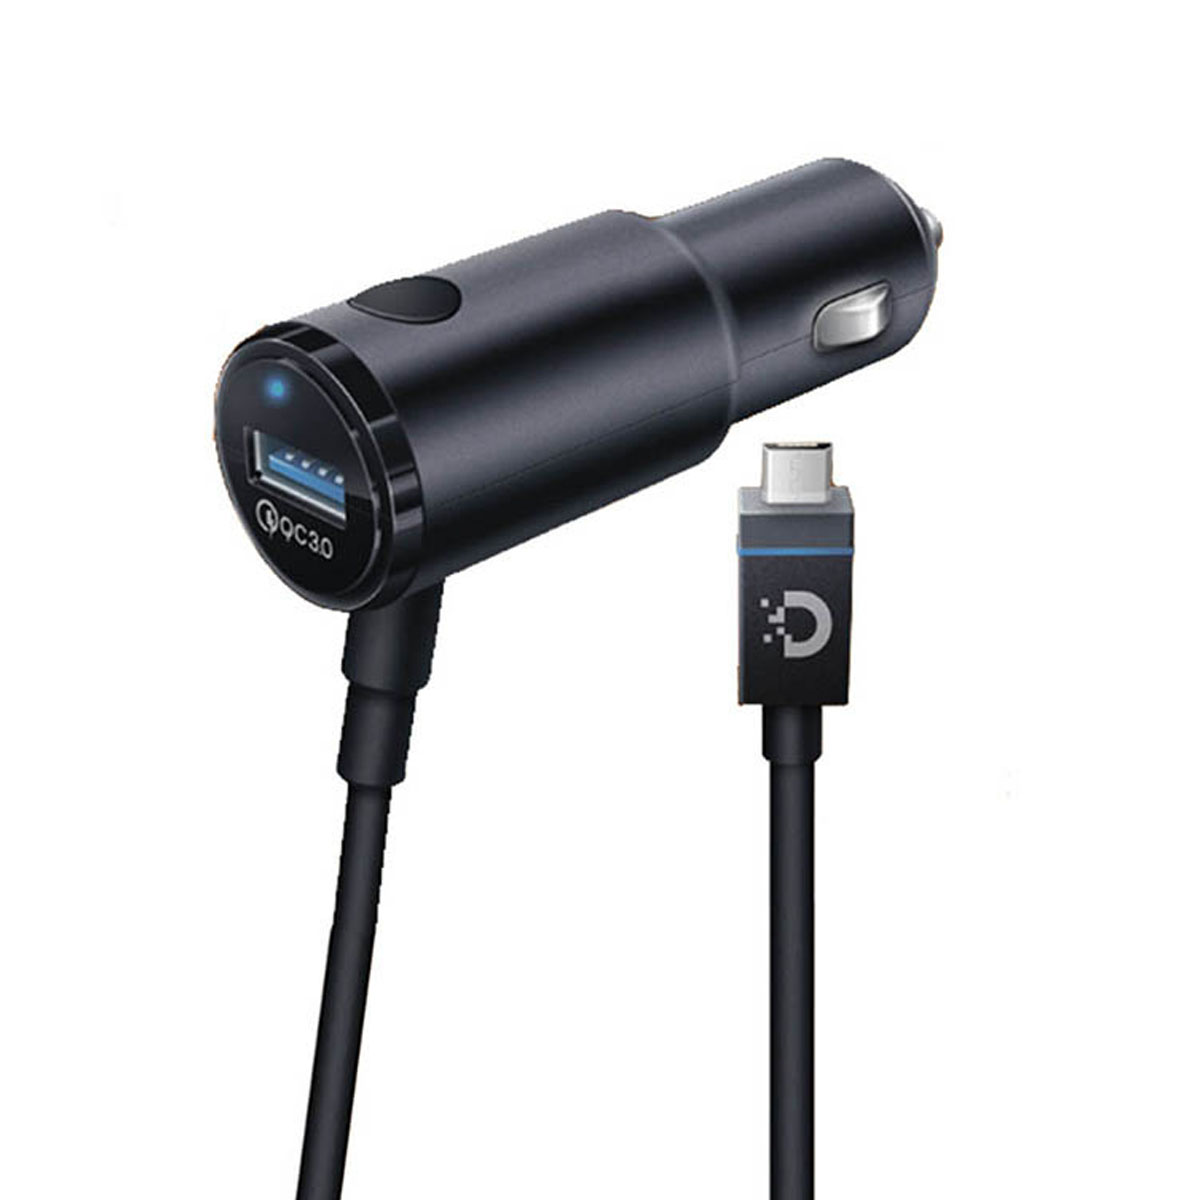 АЗУ (Автомобильное зарядное устройство) DREAM DRM-SM04 со встроенным кабелем Micro USB, 2.4A, 1 USB, длина 1.2 метра, цвет черный